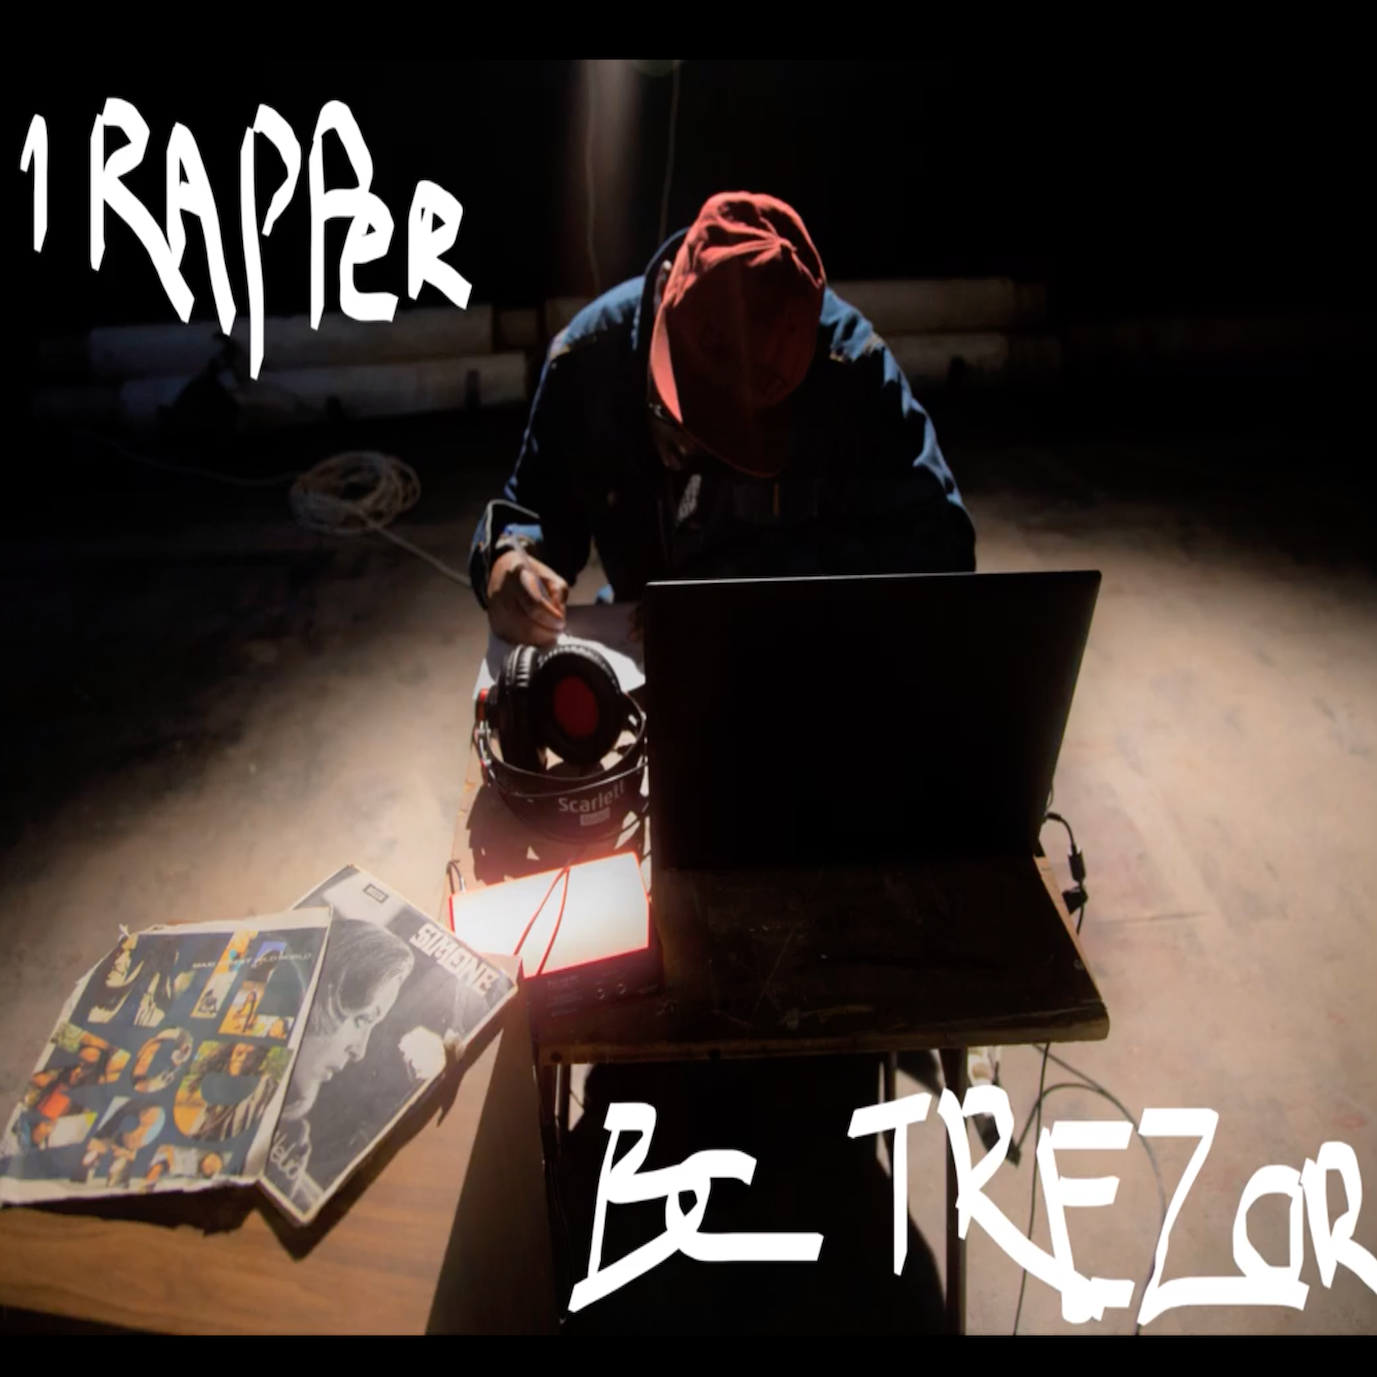 BC Trezor - 1 Rapper